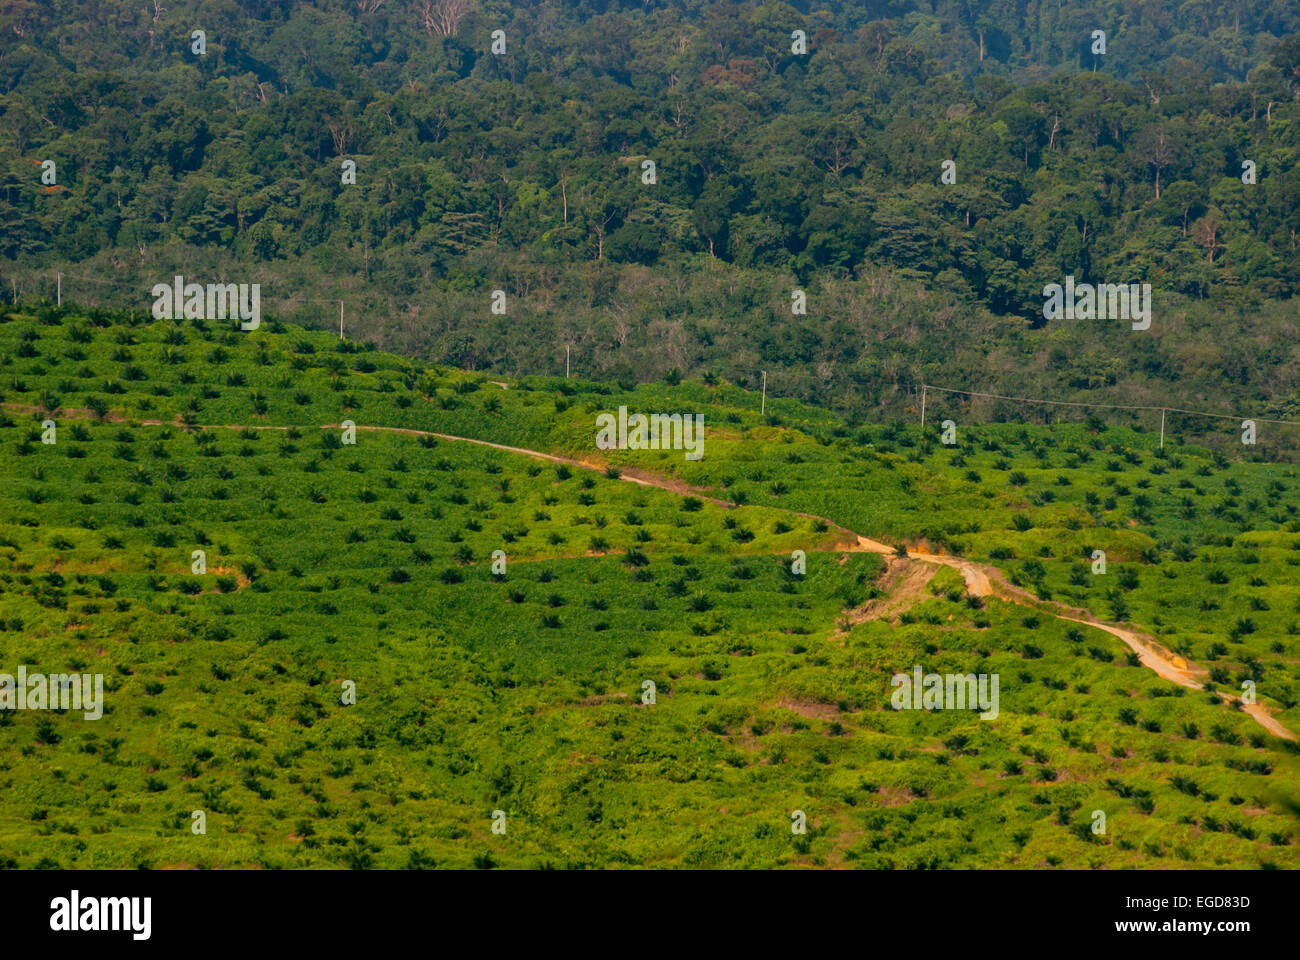 Recién plantados árboles de palma de aceite en una plantación de palma africana en el norte de la provincia de Sumatra, Indonesia. Foto de stock